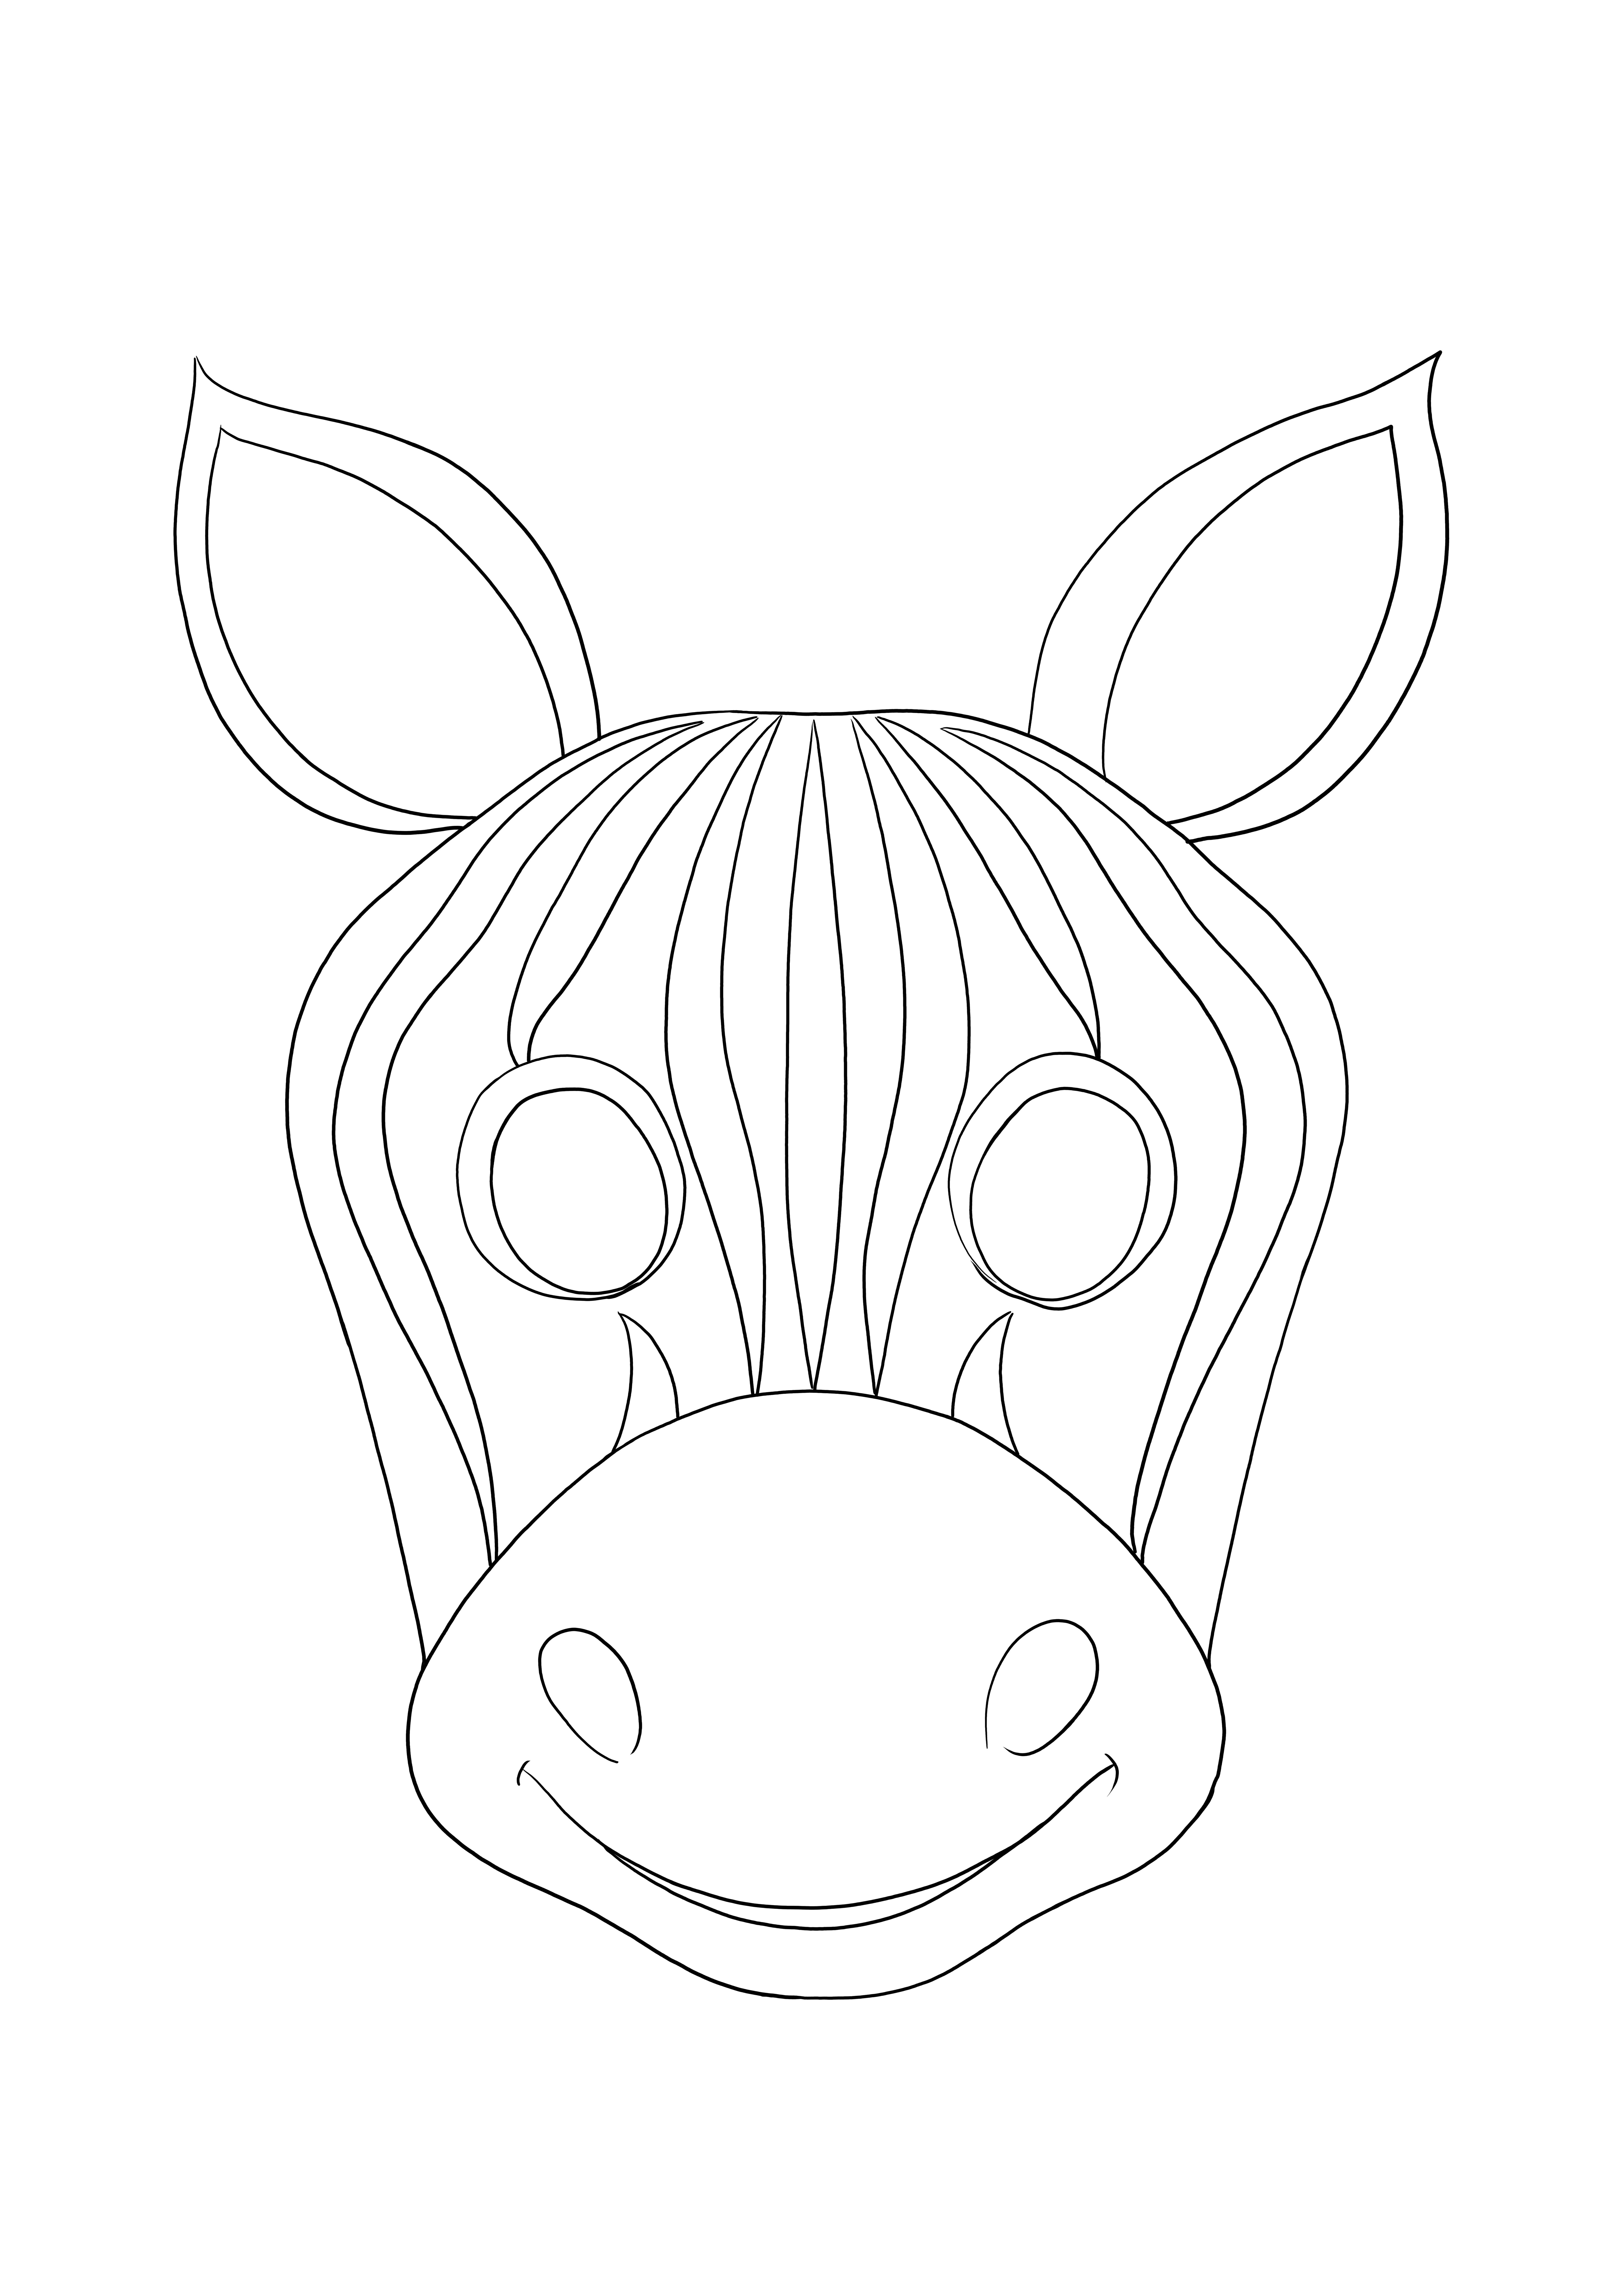 Pewarnaan topeng zebra yang sederhana dan mudah untuk pewarnaan dan pencetakan gratis